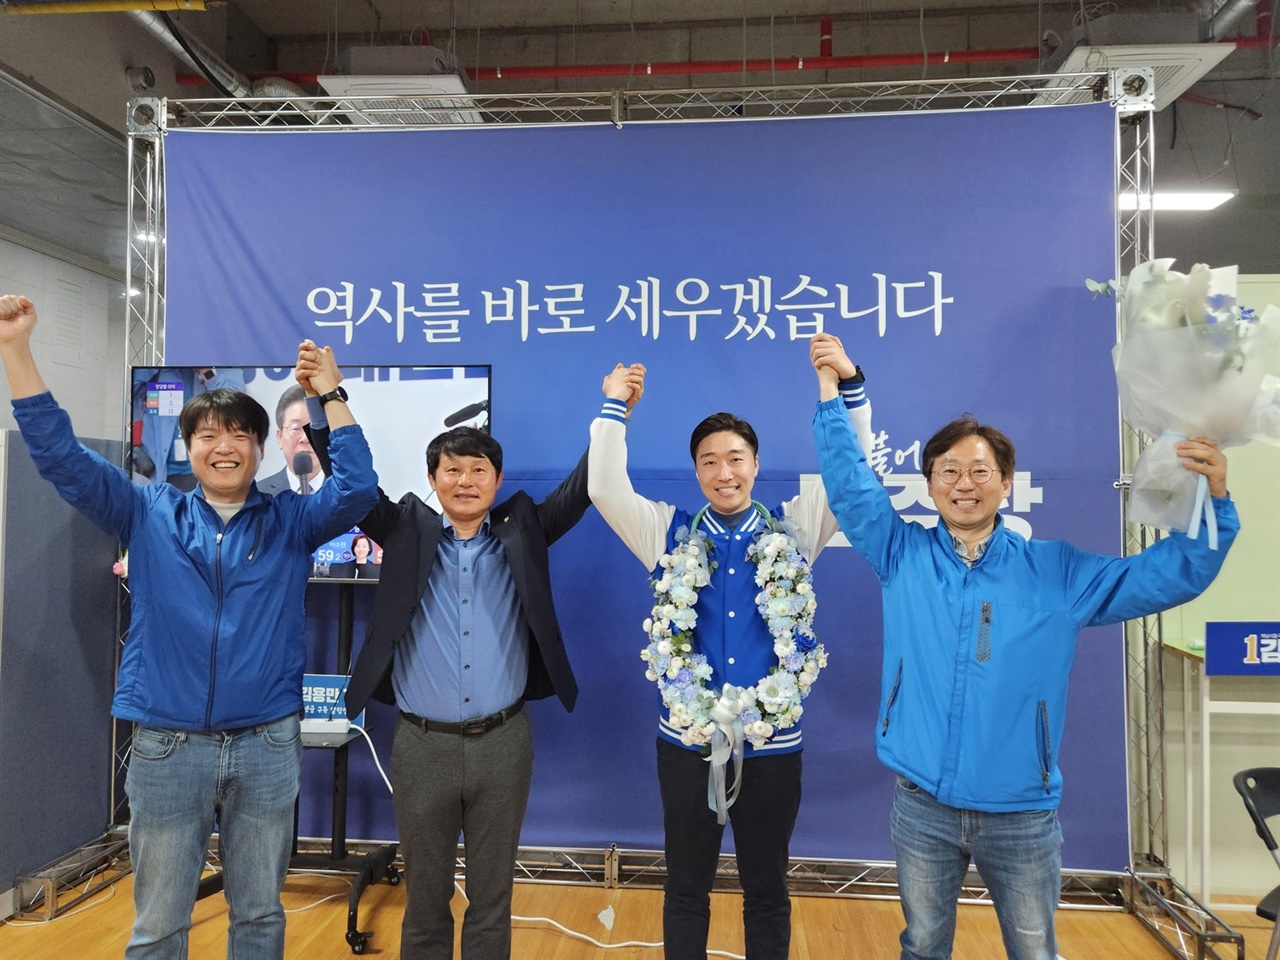 경기 하남을에서는 국민의힘 이창근 후보, 새로운미래 추민규 후보와 3파전을 벌인 더불어민주당 김용만(37) 후보가 당선됐다.